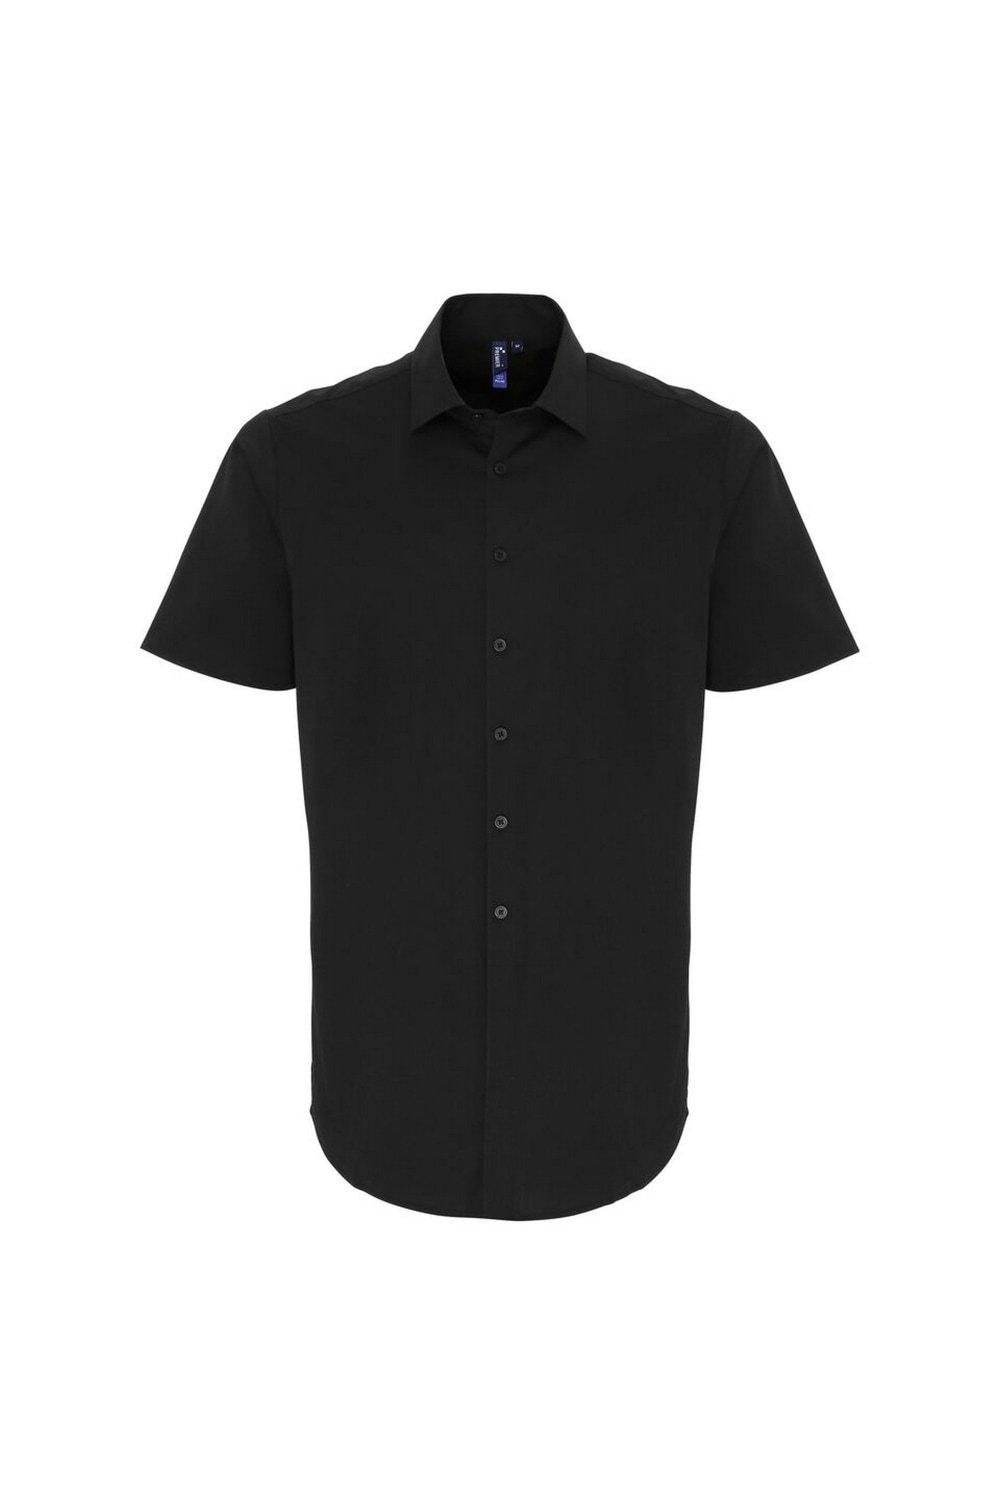 Рубашка из поплина стрейч с короткими рукавами Premier, черный рубашка узкого покроя из поплина стрейч xs черный